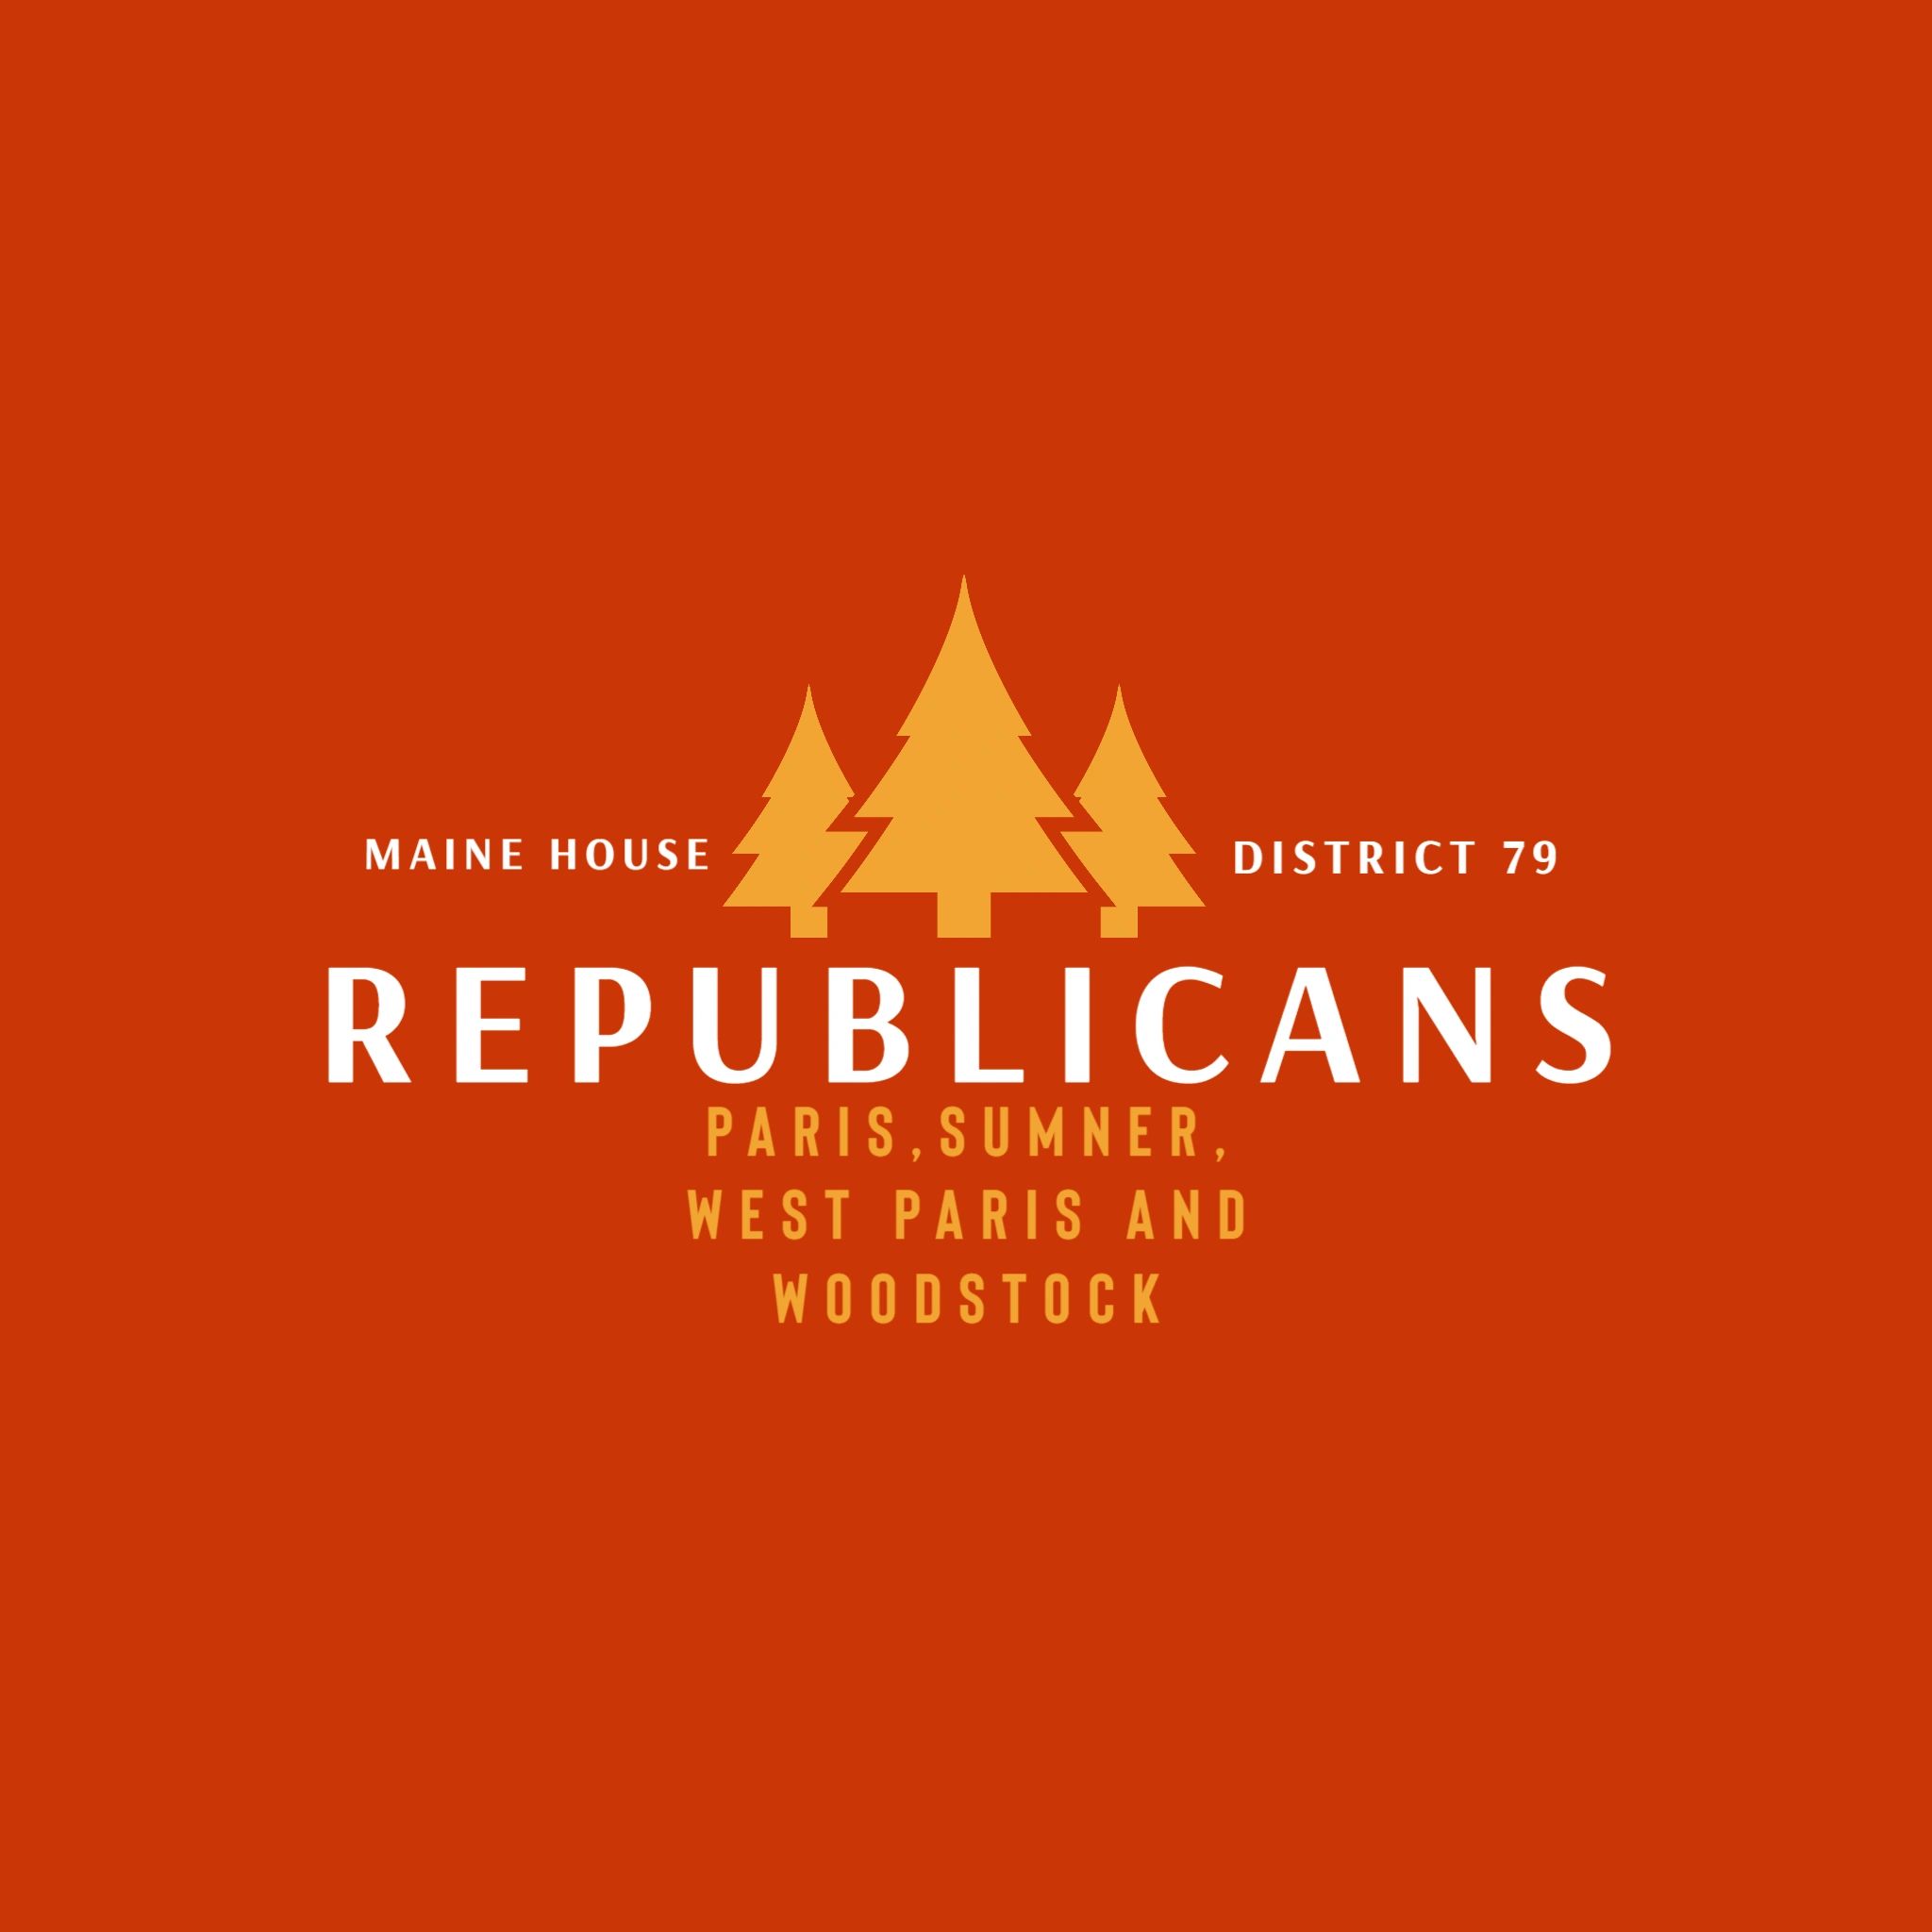 District 79 Republicans